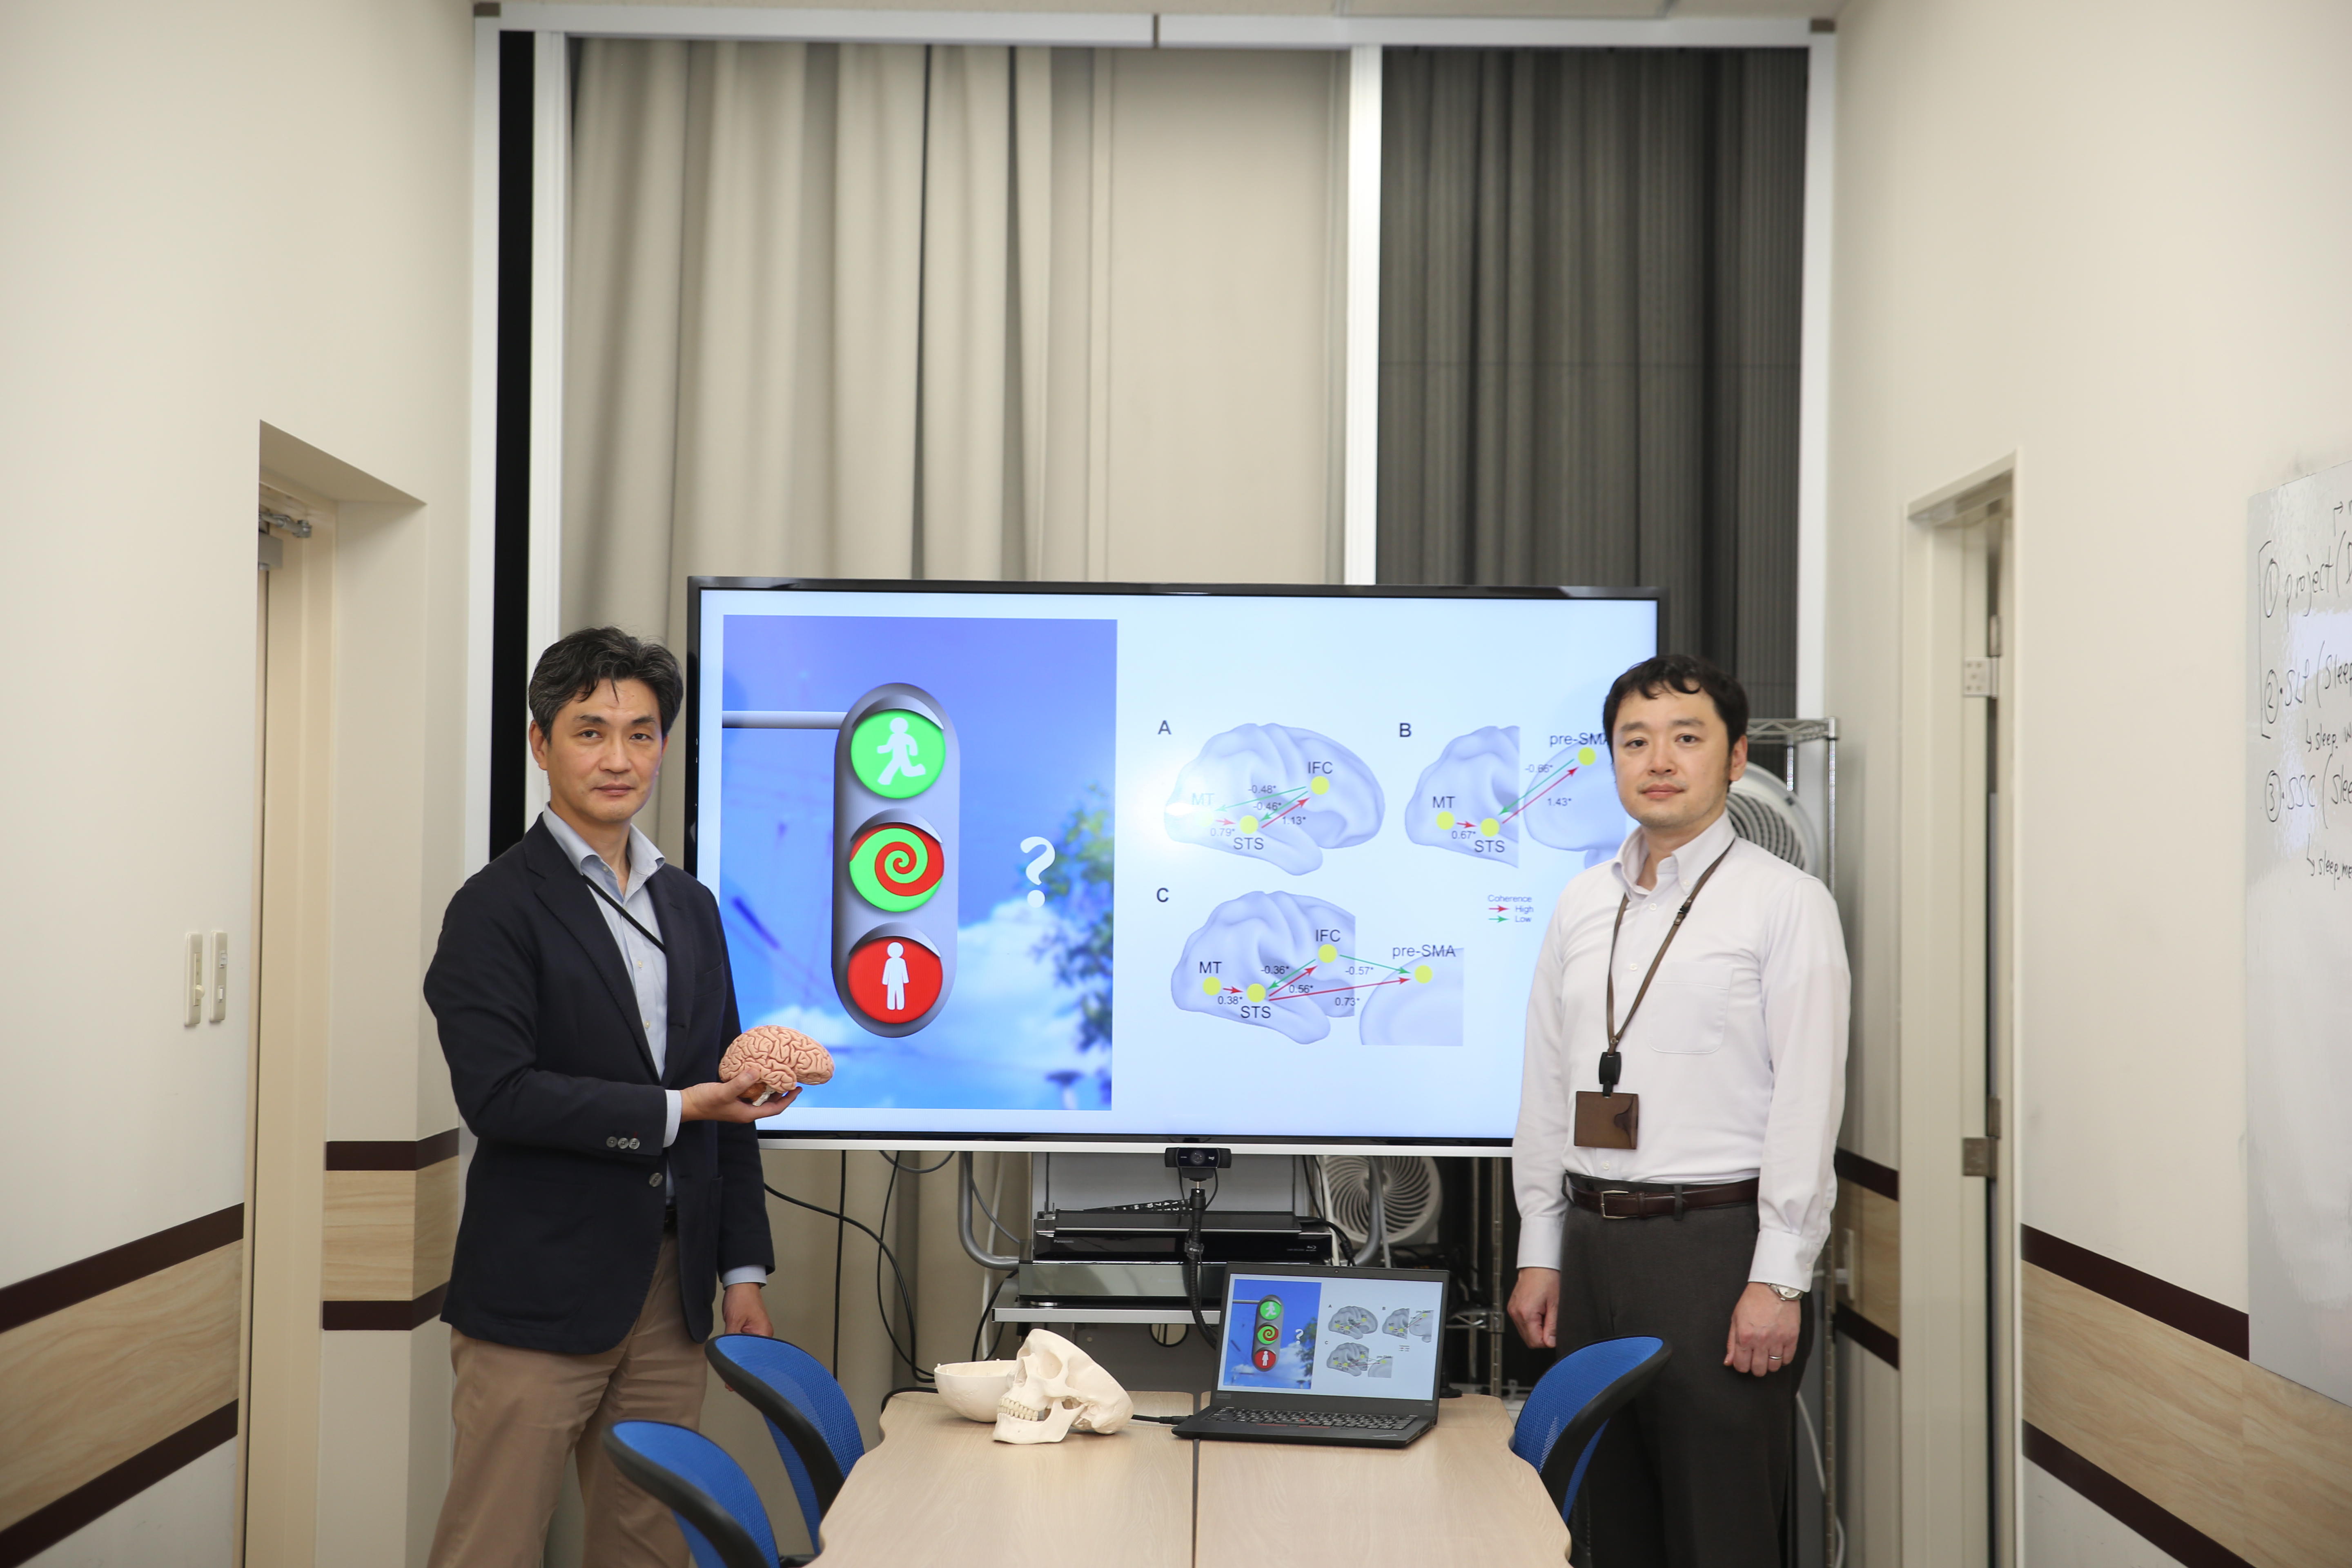 地村客員准教授、中原教授、竹田特任教授らの研究グループが、わかりにくい状況で不適切な反応を抑制する脳機構を解明 認知の制御と知覚のトリロジーを発表